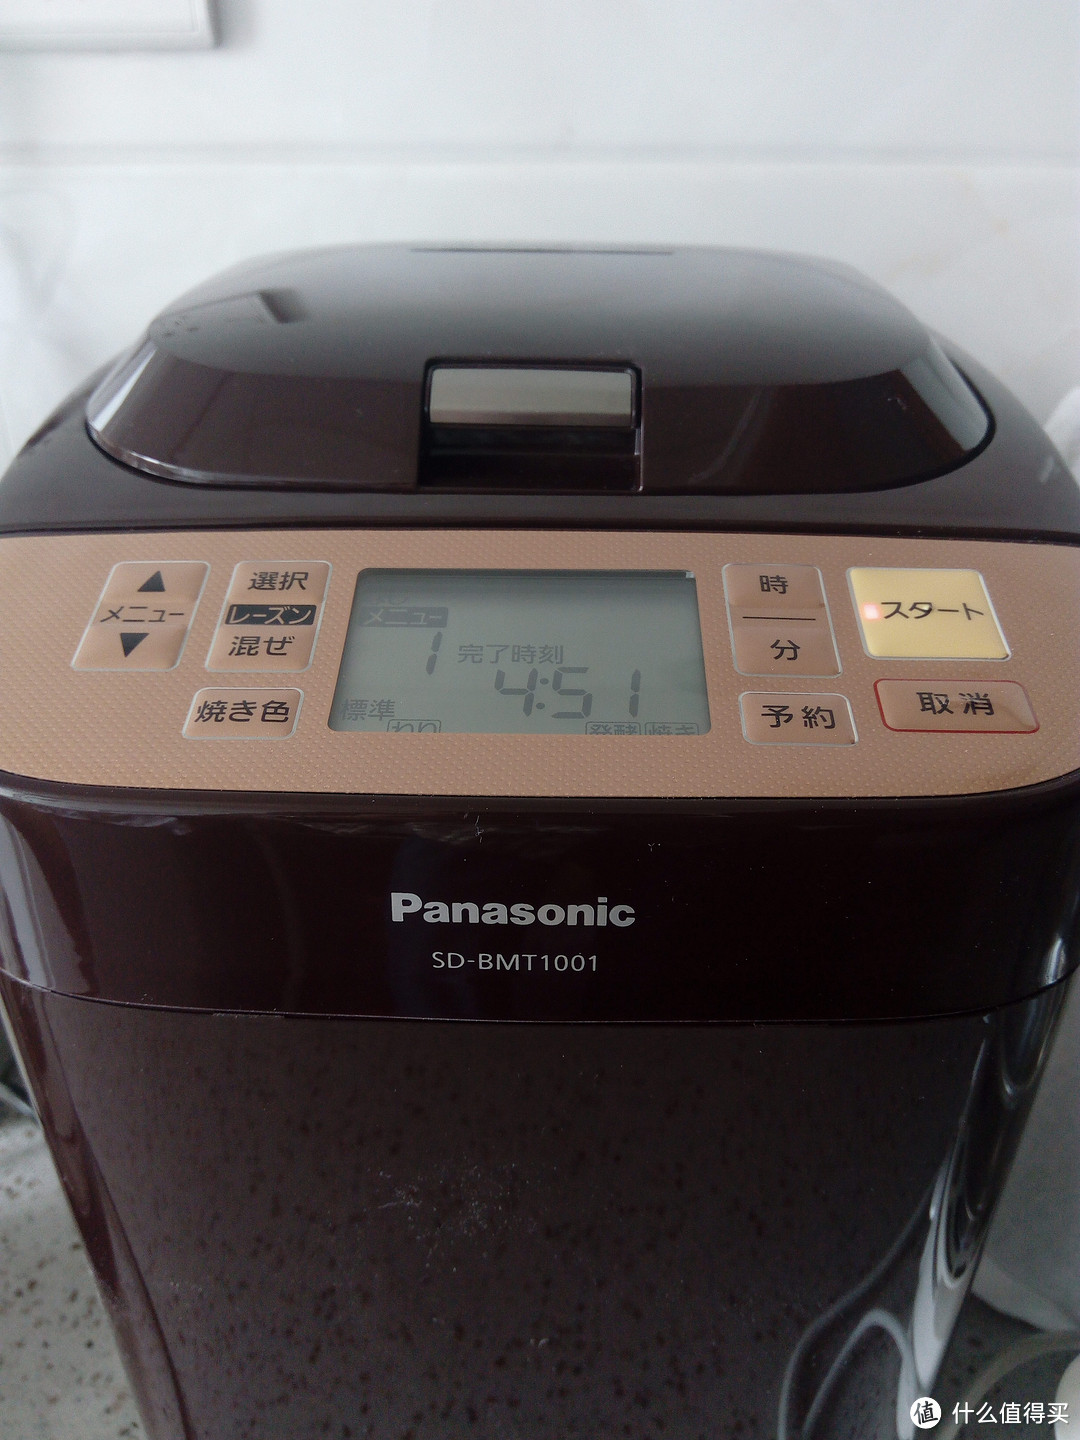 Panasonic 松下 SD-BMT1001 面包机 入手体验